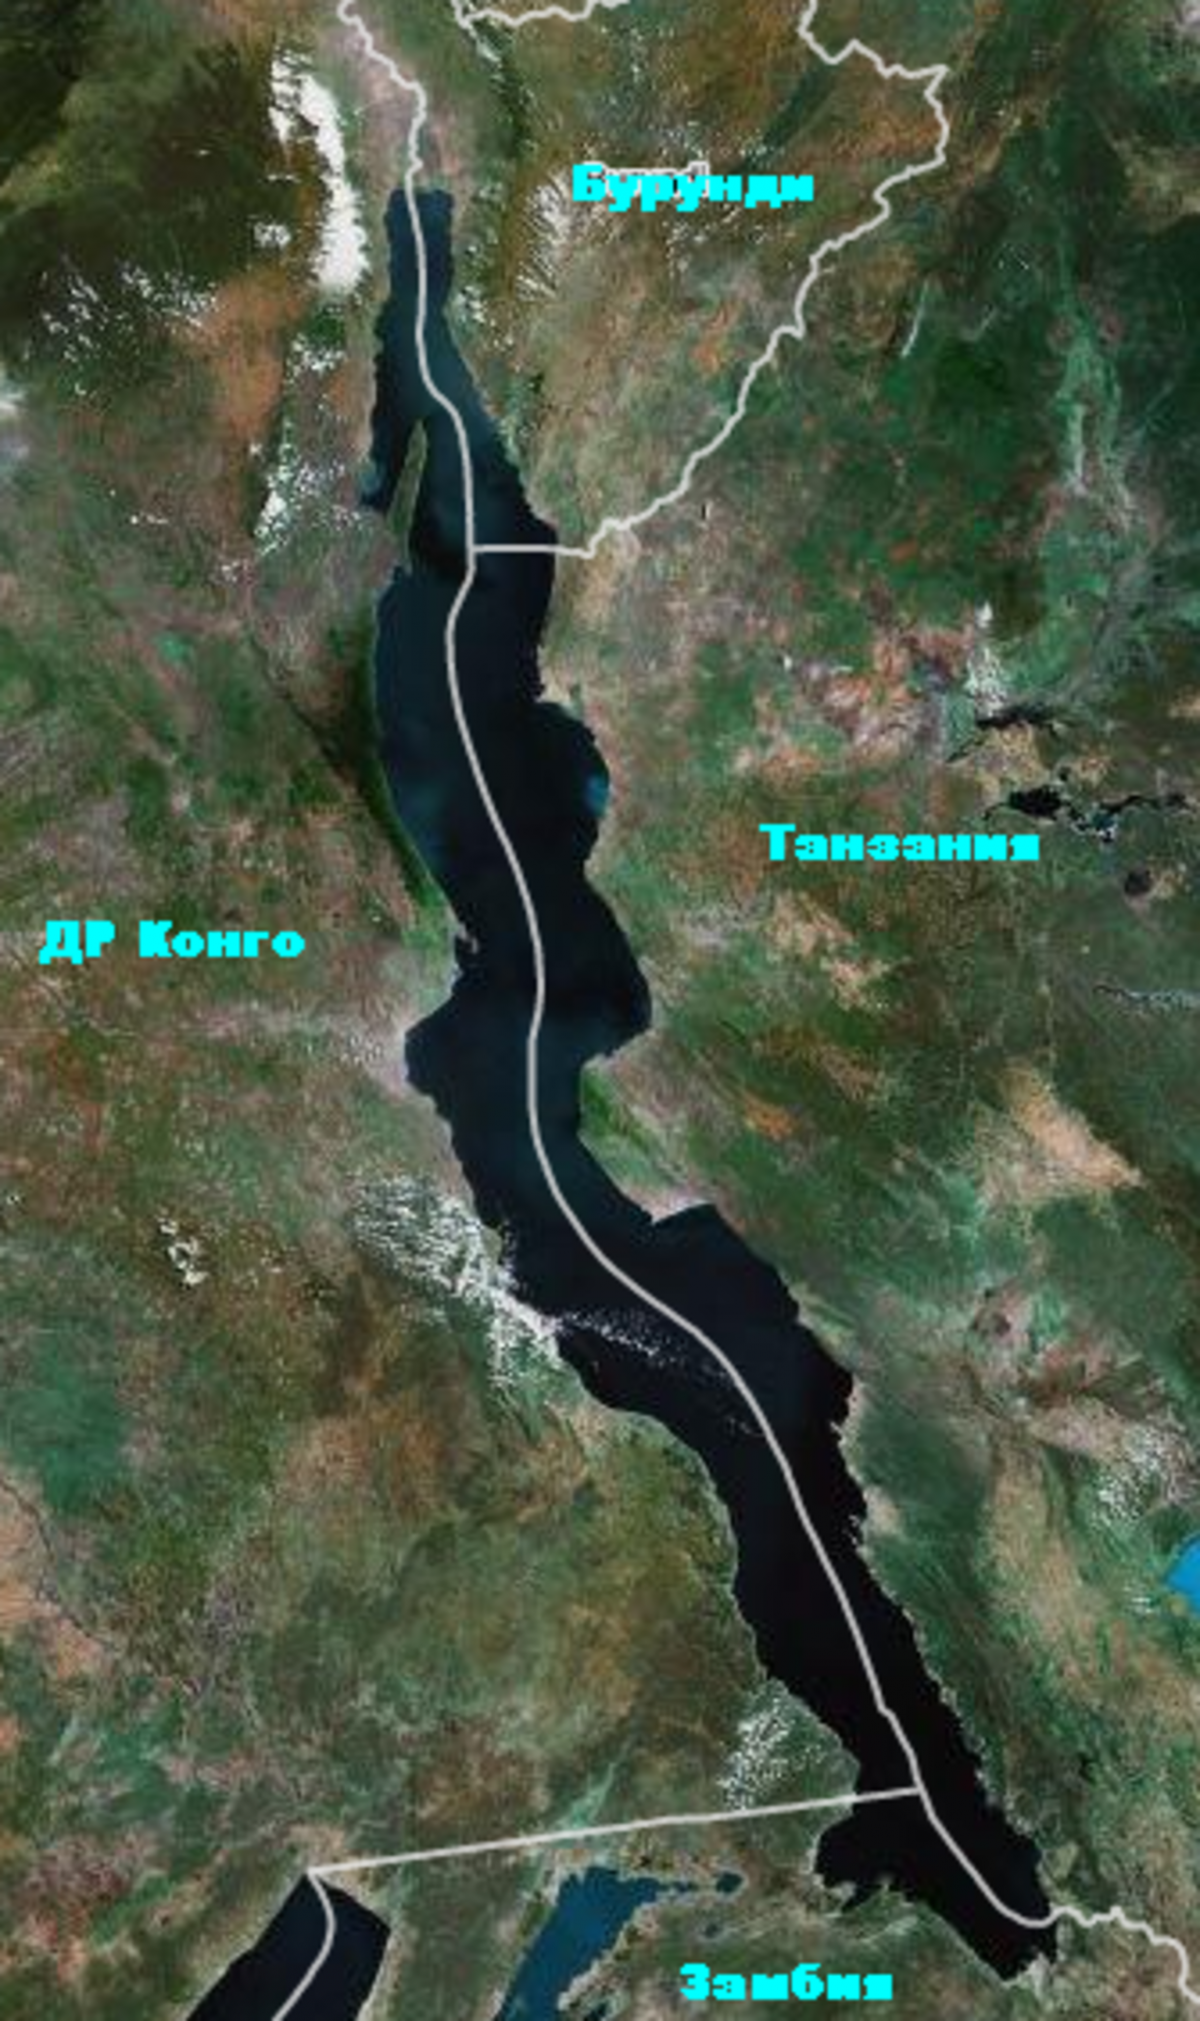 Озеро Танганьика. Танзания озеро Танганьика. Озеро Танганьика из космоса. Озеро Танганьика глубина 1470 м. Озера африканского разлома